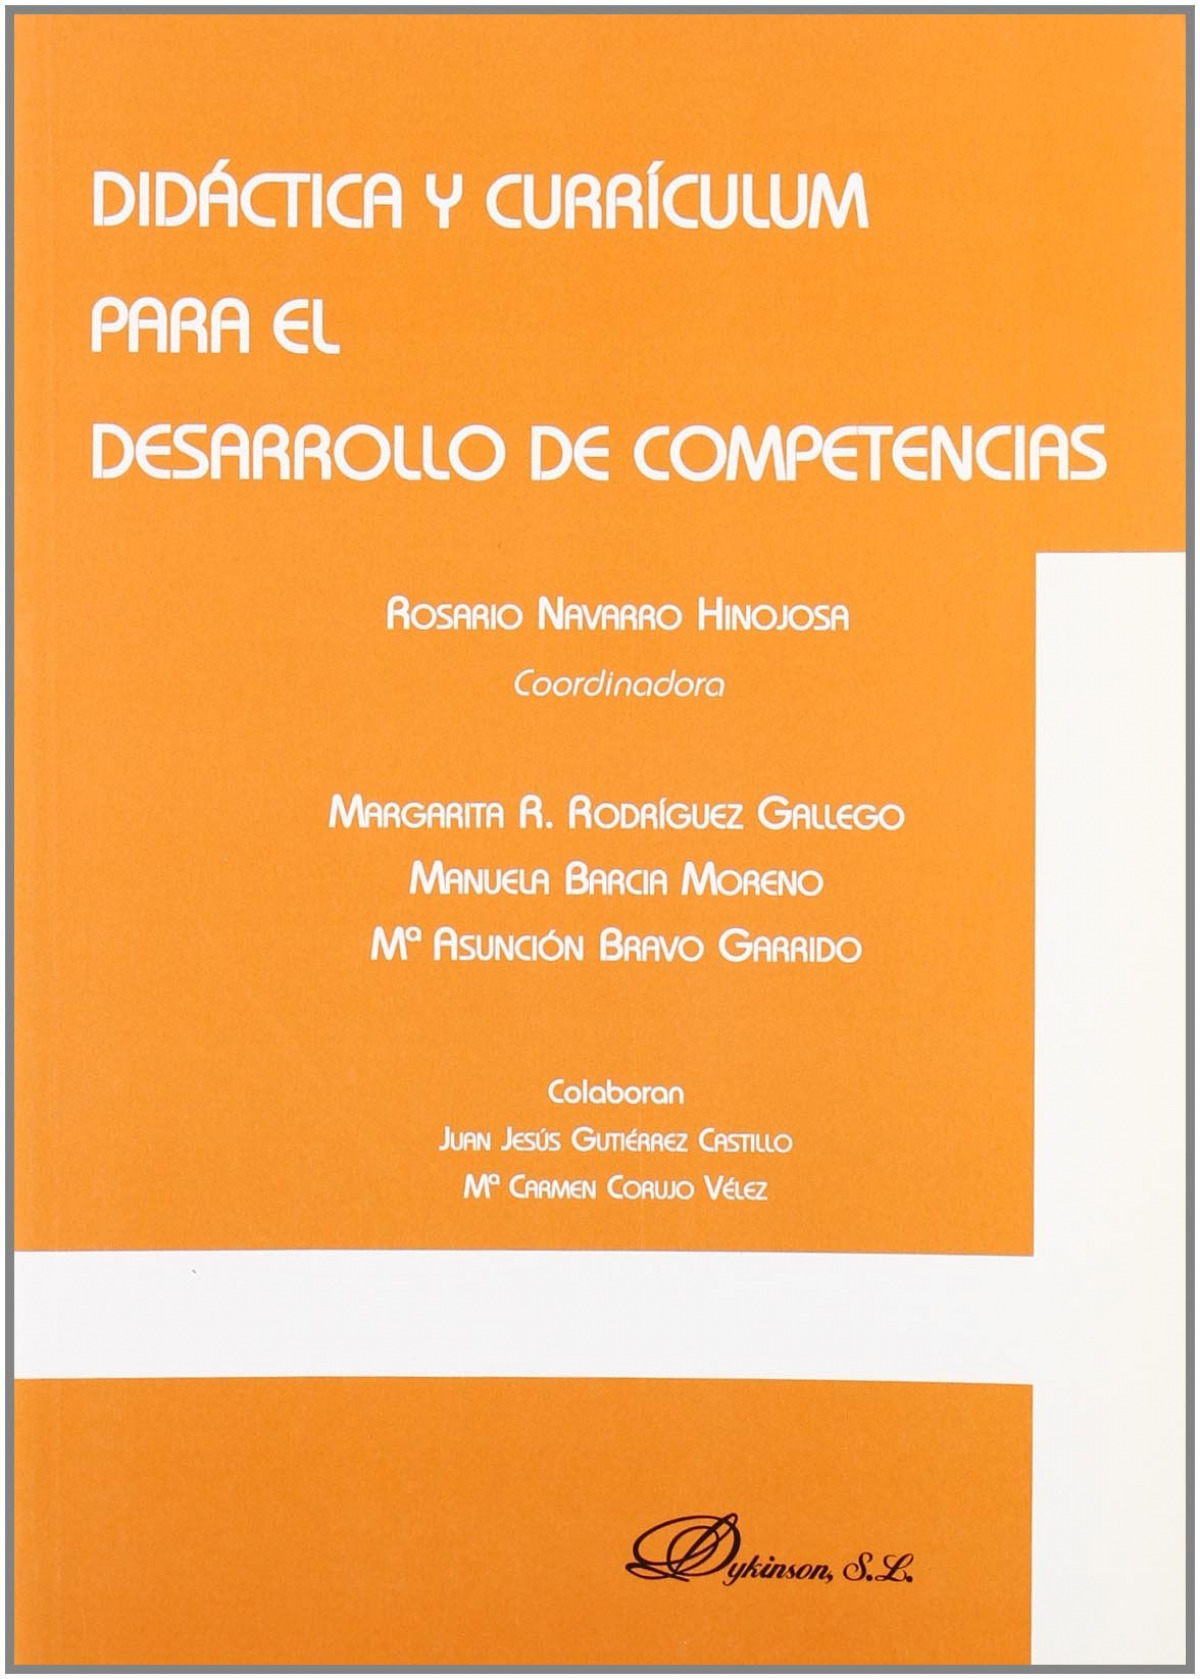 Didactica y curr¡culum para el desarrollo de competencias - Navarro Hinojosa, Rosario